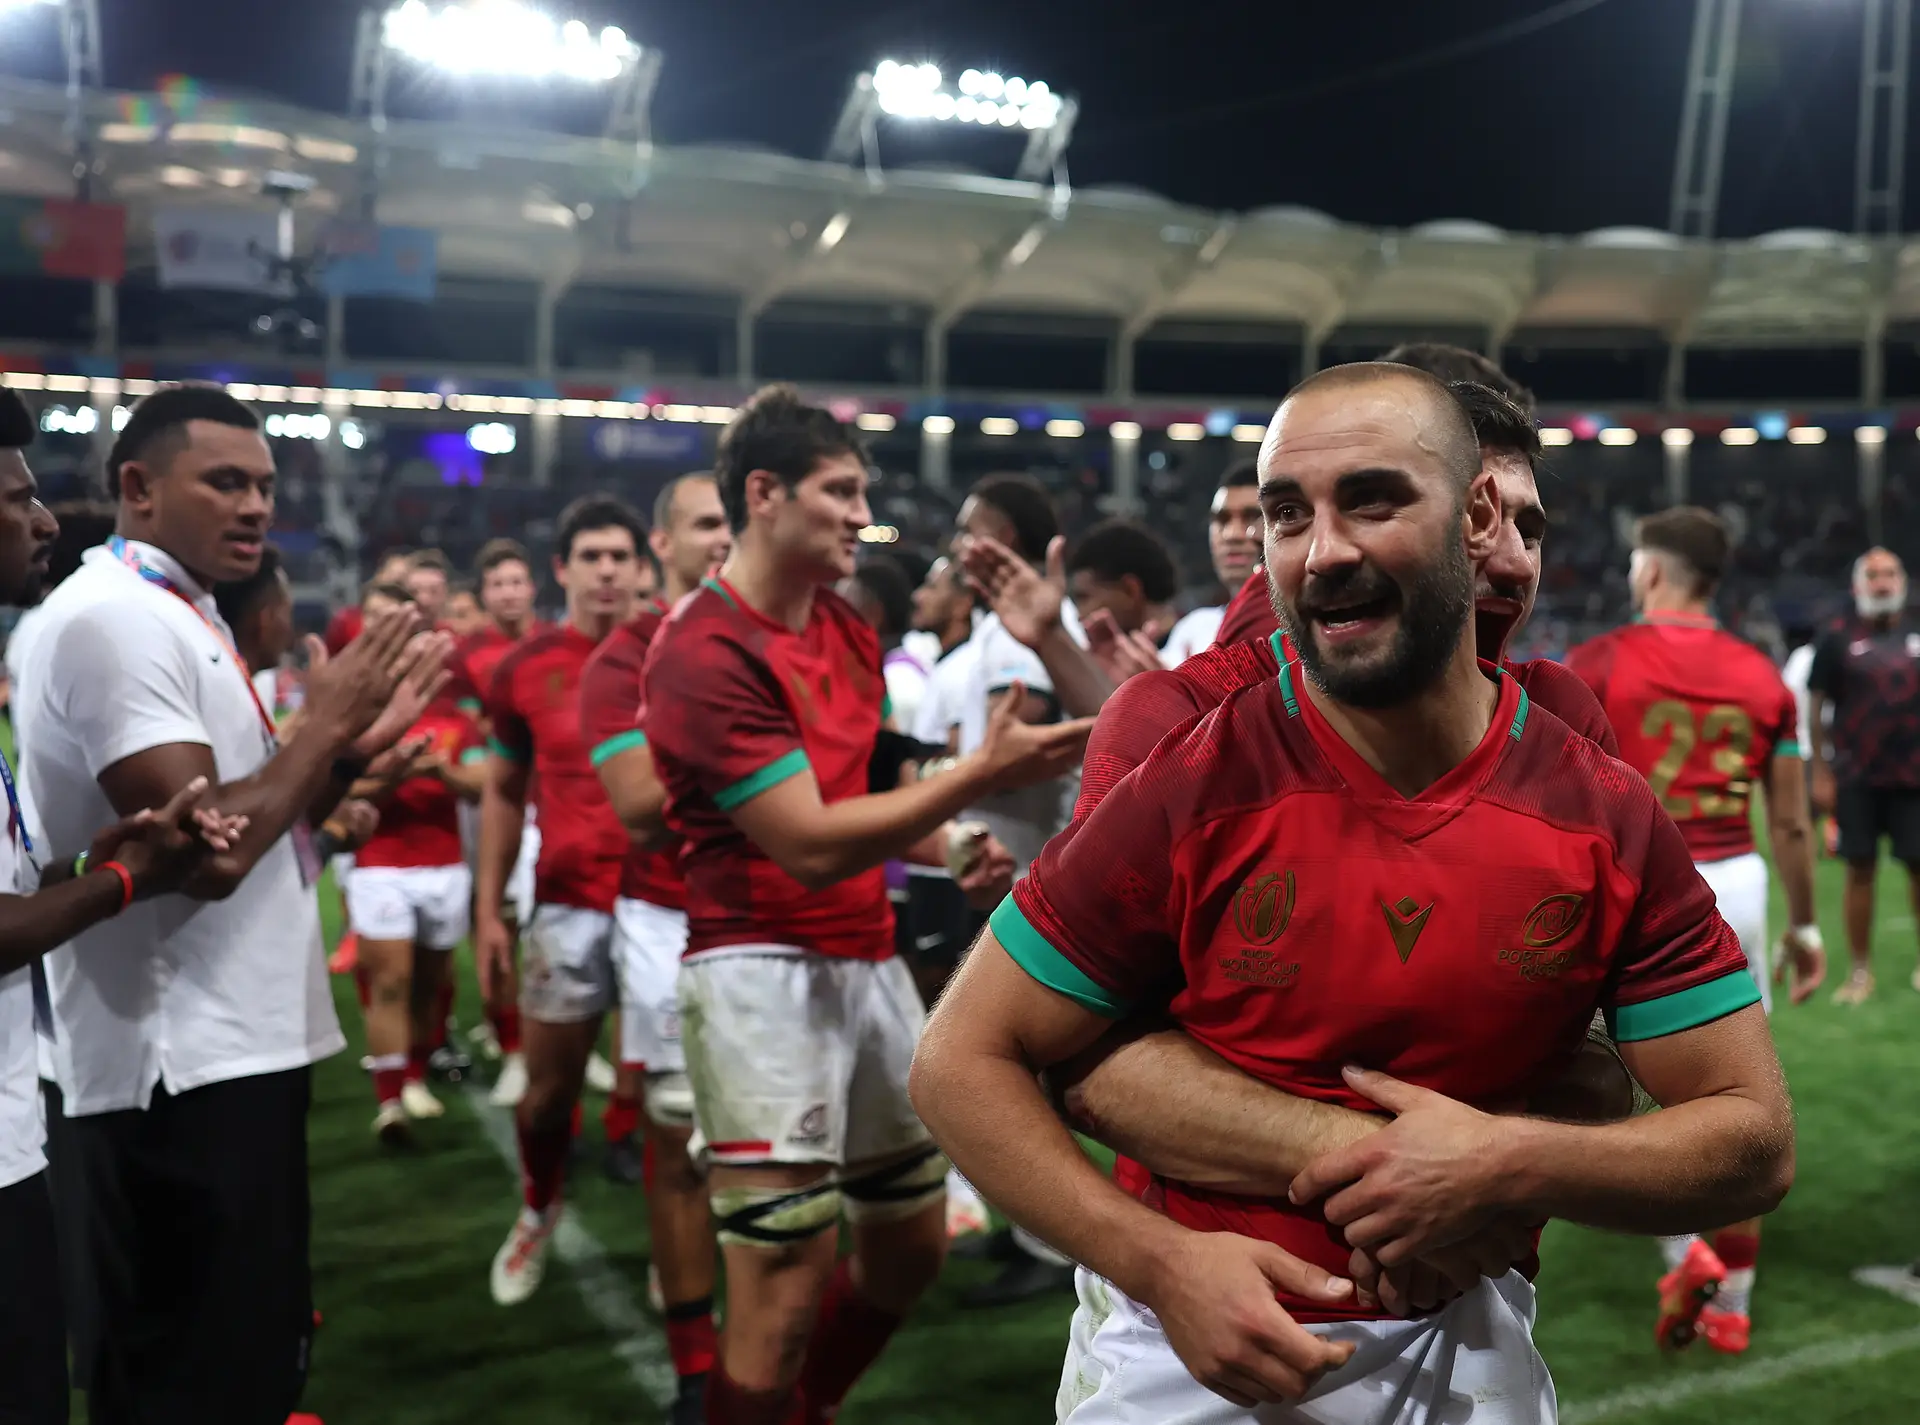 Portugal apurado para o Mundial de rugby 2023